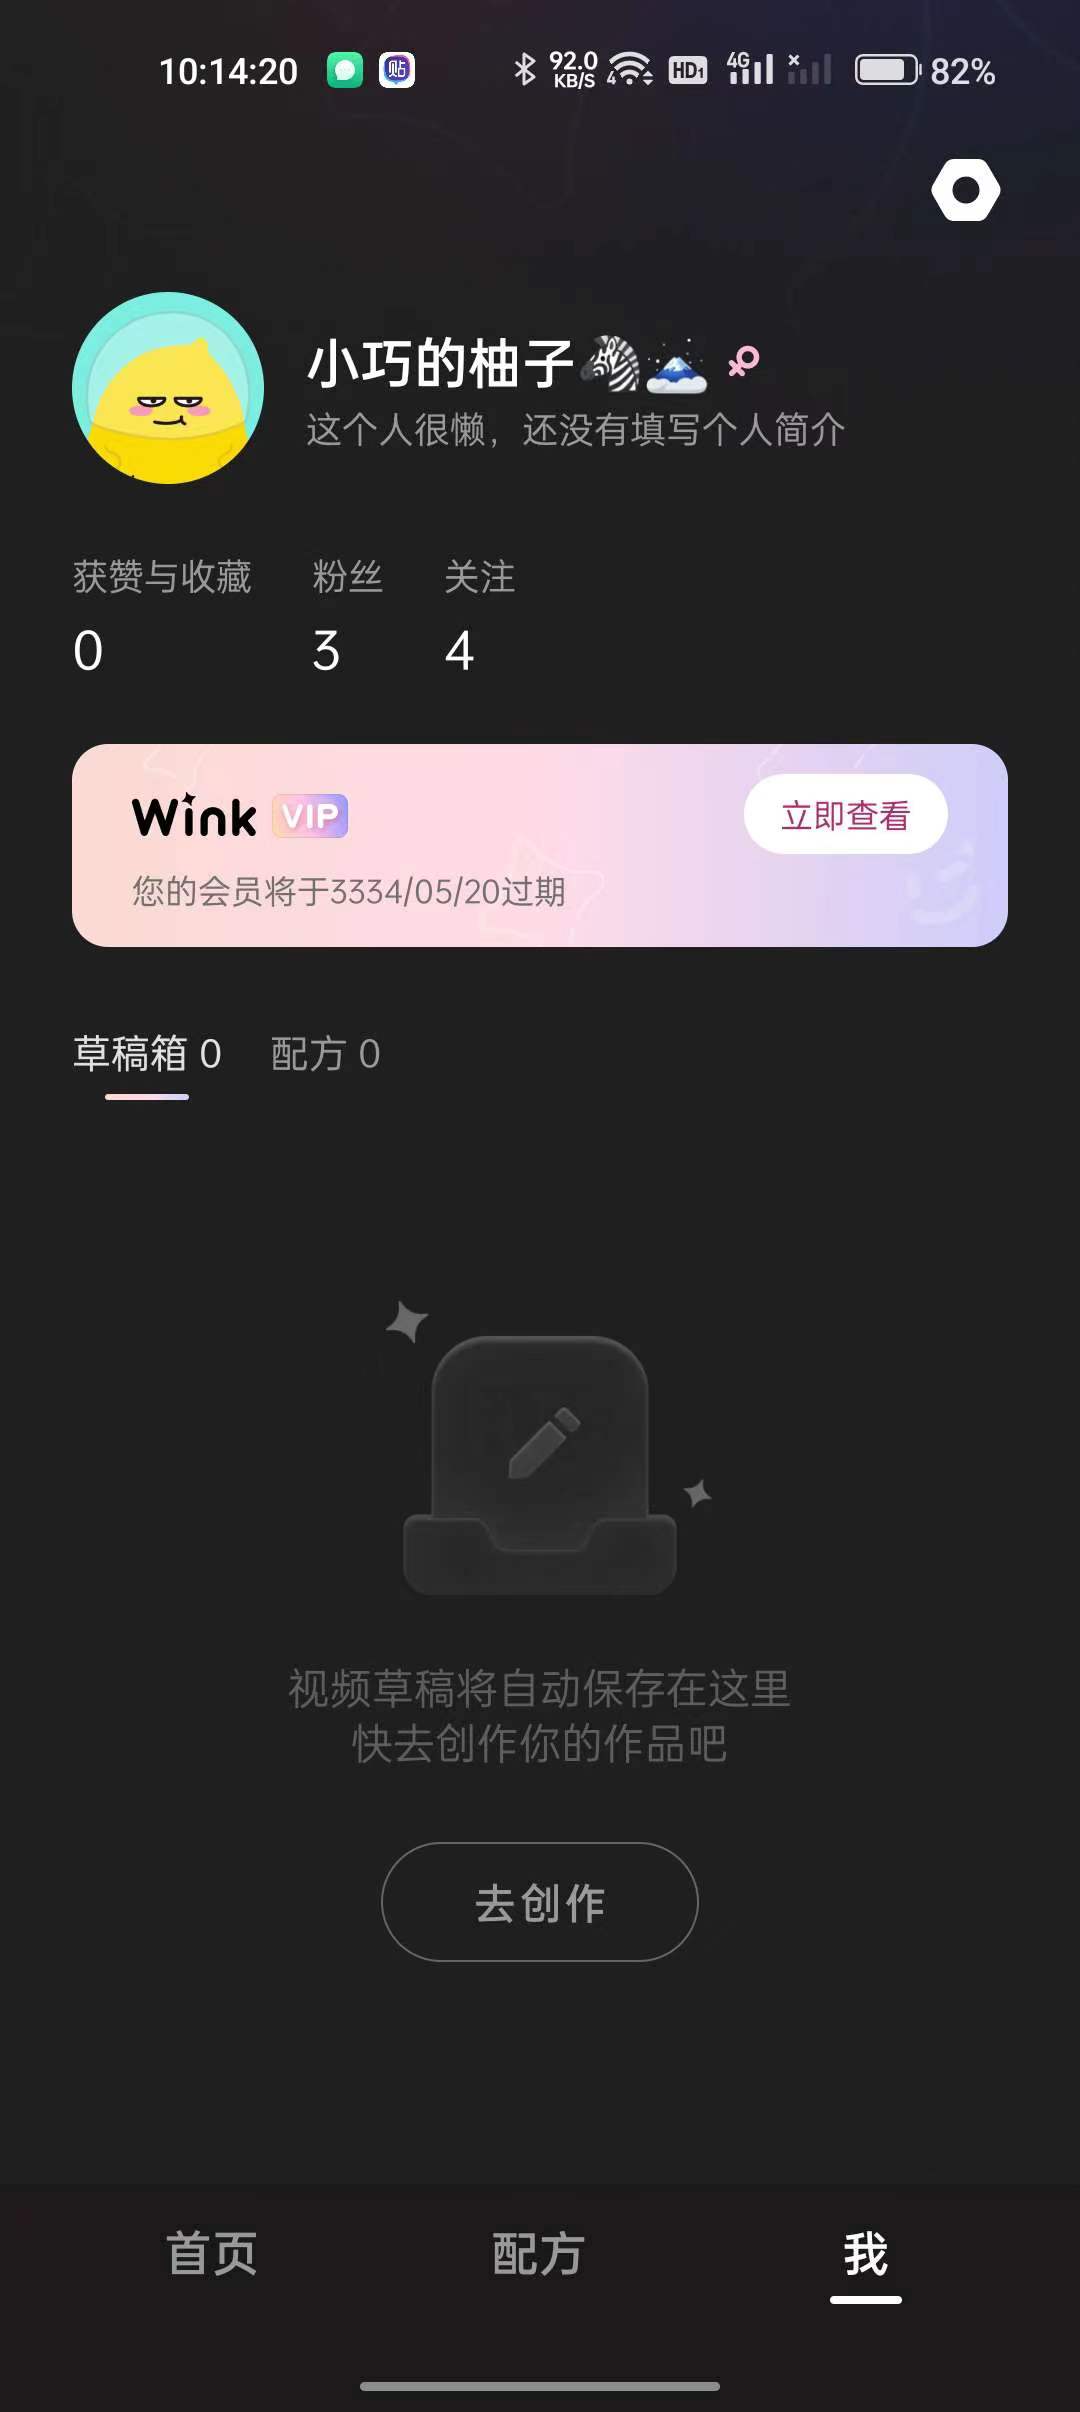 Wink1.5.8.0画质修复解锁会员 屠城辅助网www.tcfz1.com9913